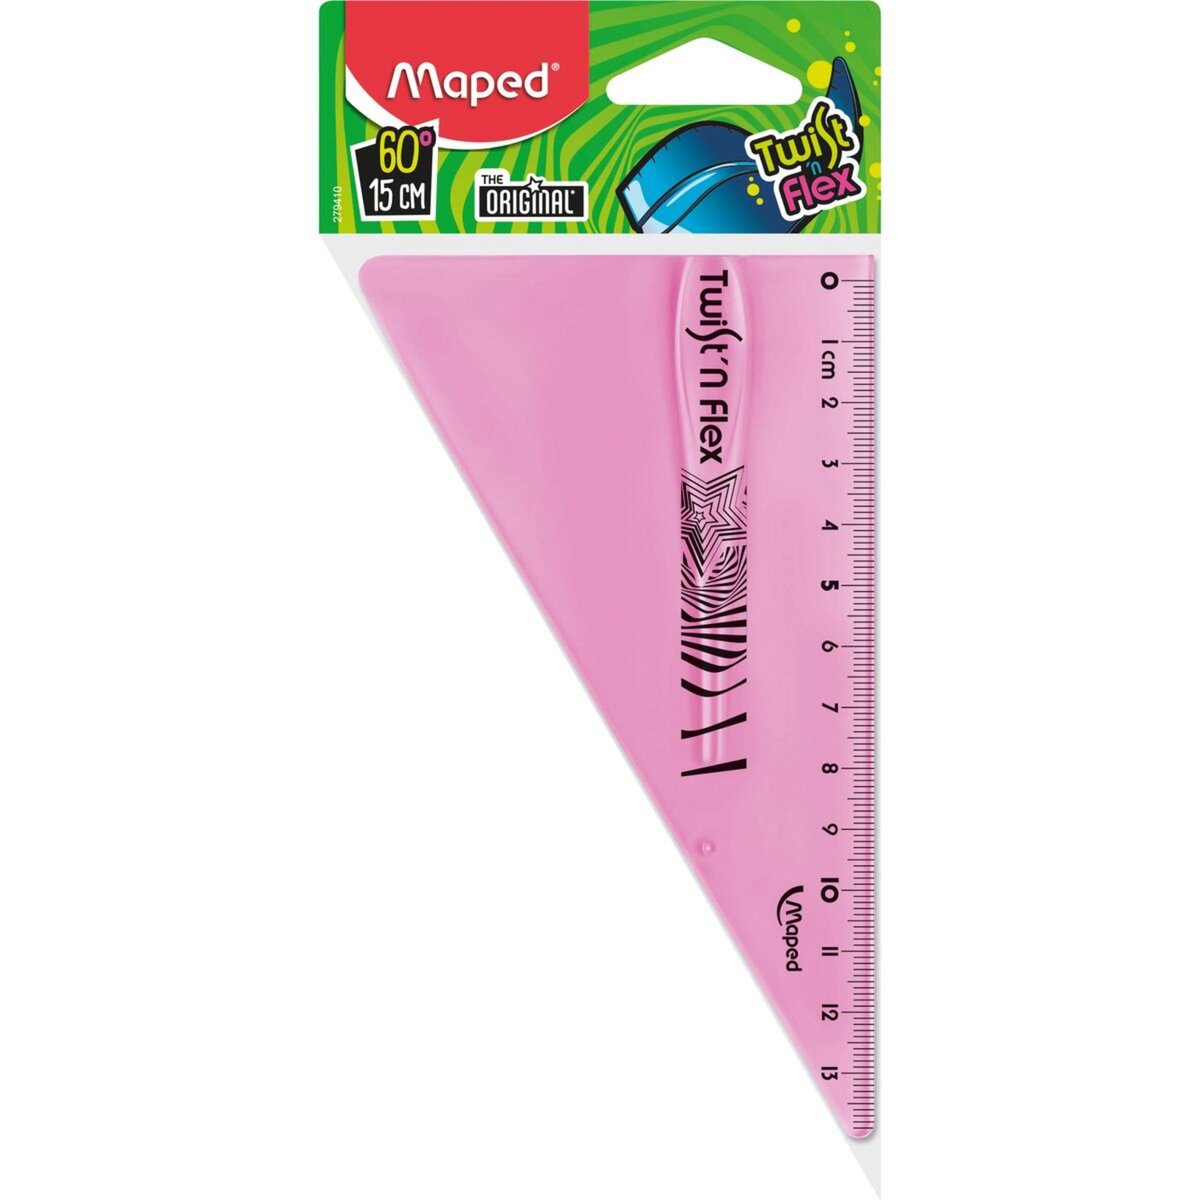 MAPED Equerre en plastique Twist'n'Flex 60° 15cm rose pas cher 